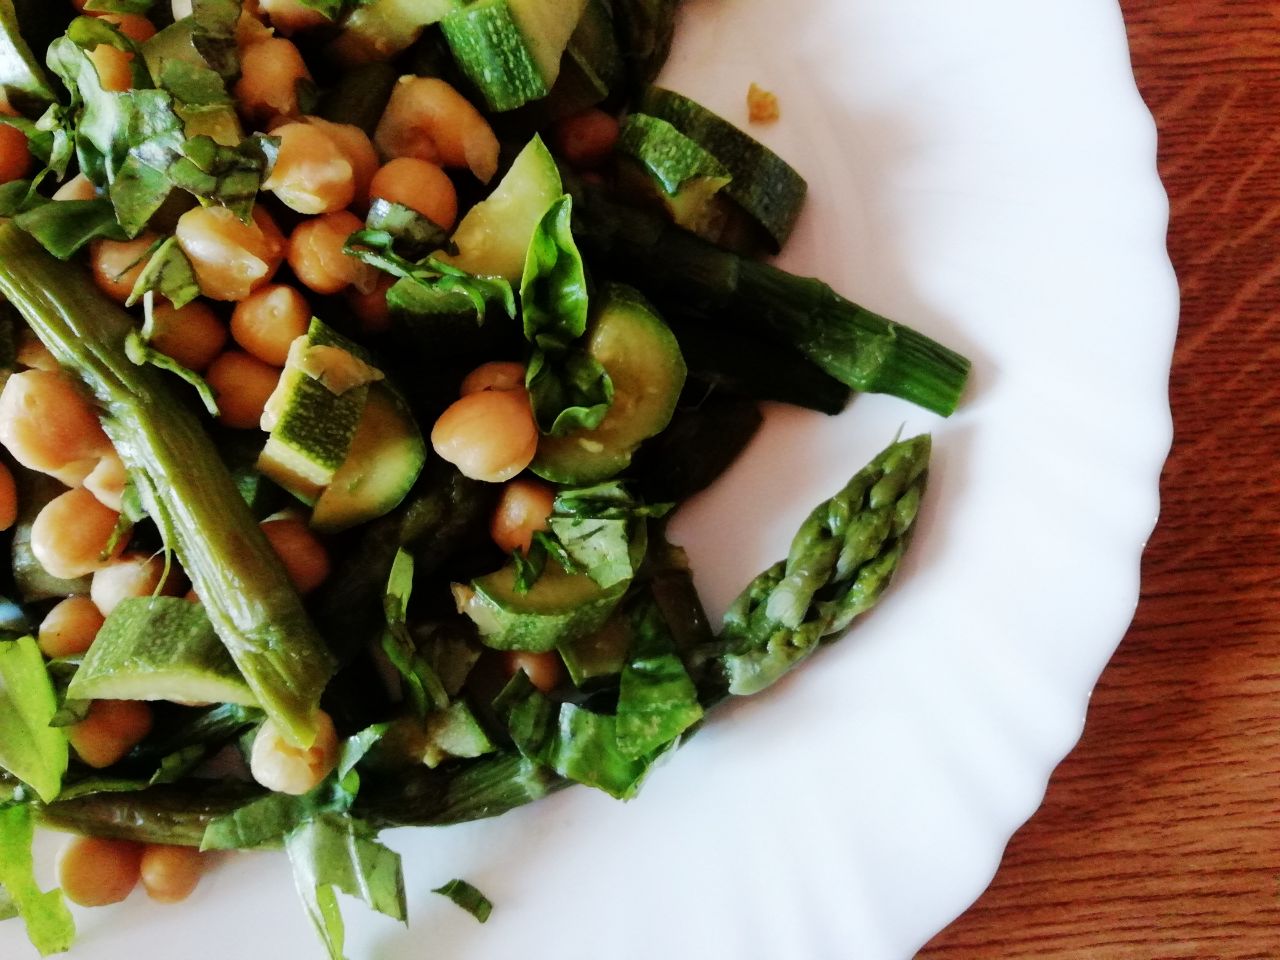 Piatti unici leggeri ed economici a base di legumi: insalata di asparagi zucchine e ceci con basilico fresco!